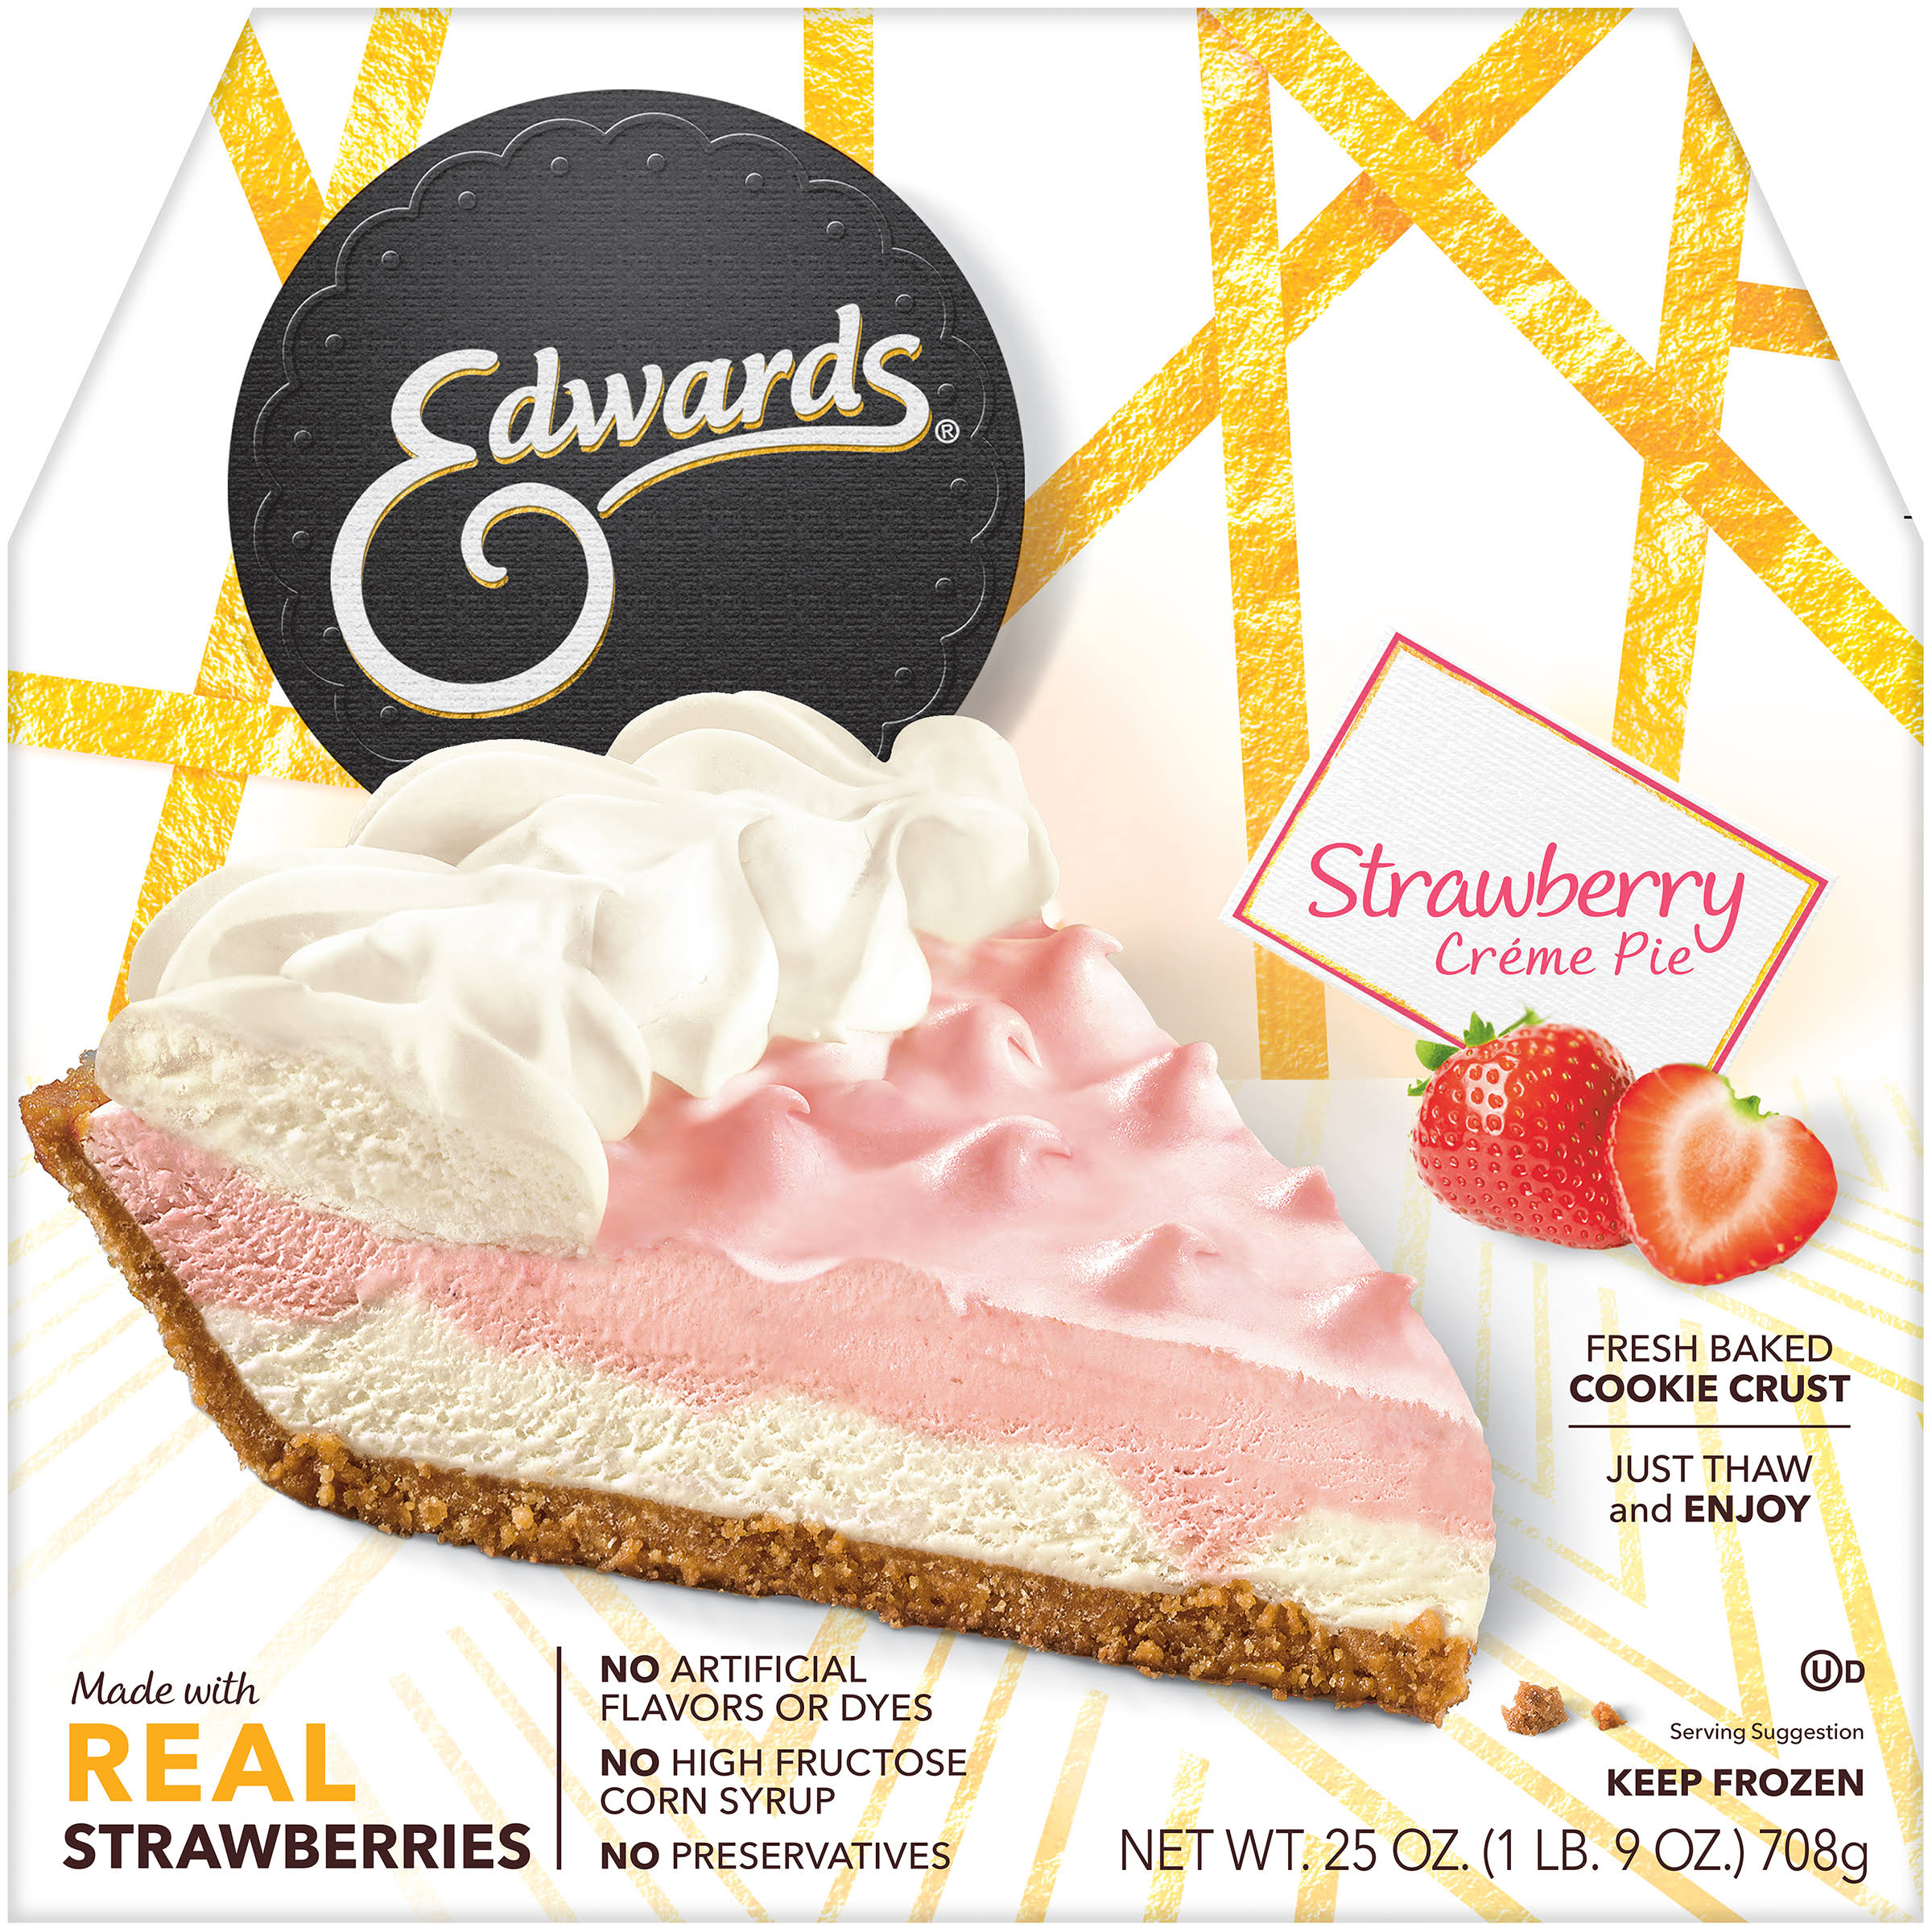 Edwards Creme Pie - 25oz, Strawberry